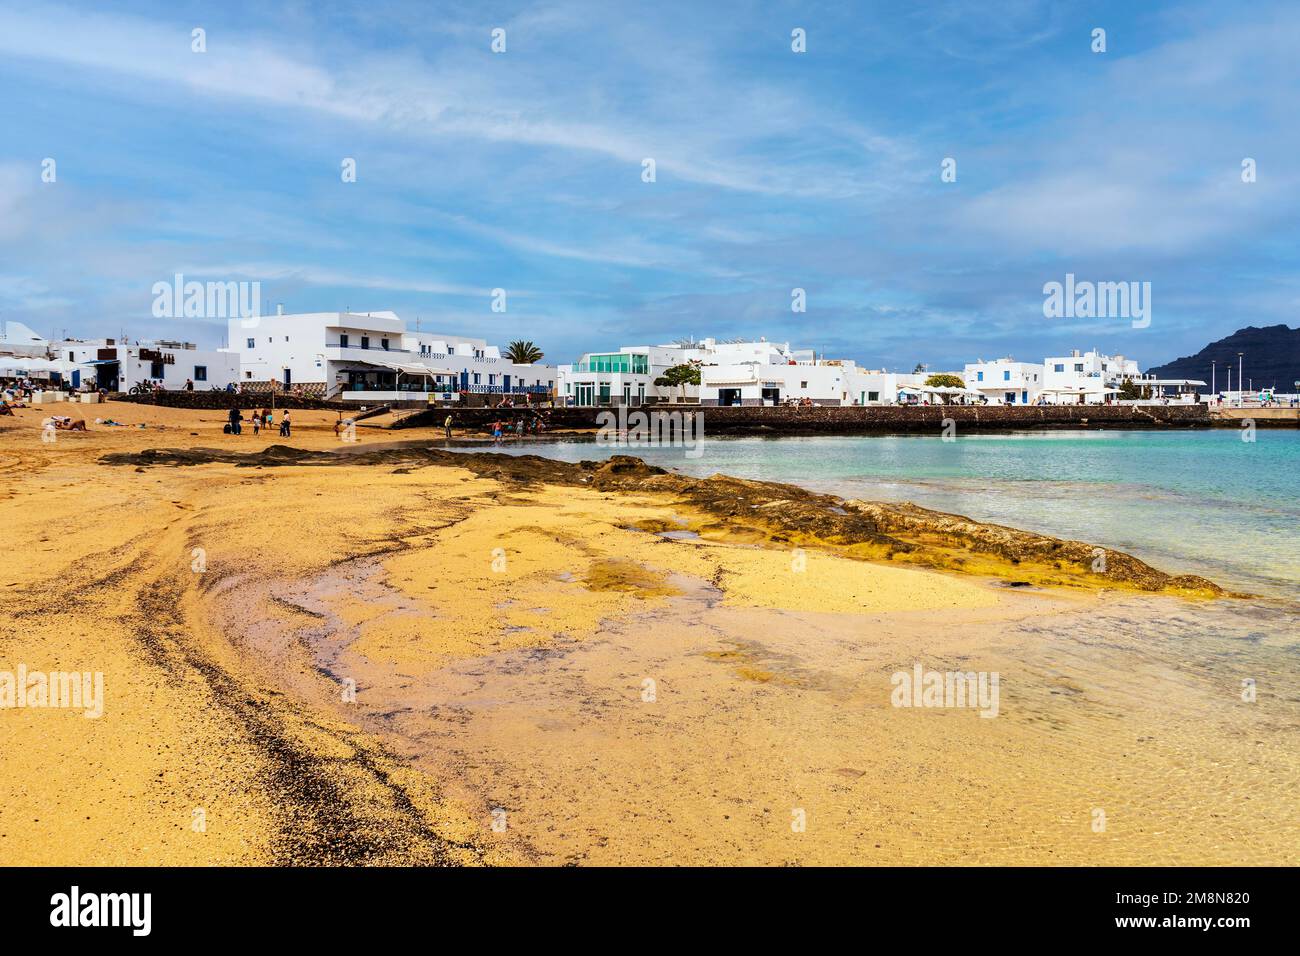 Beach and white architecture in Caleta del Sebo, Graciosa Island, Canary Islands, Spain Stock Photo